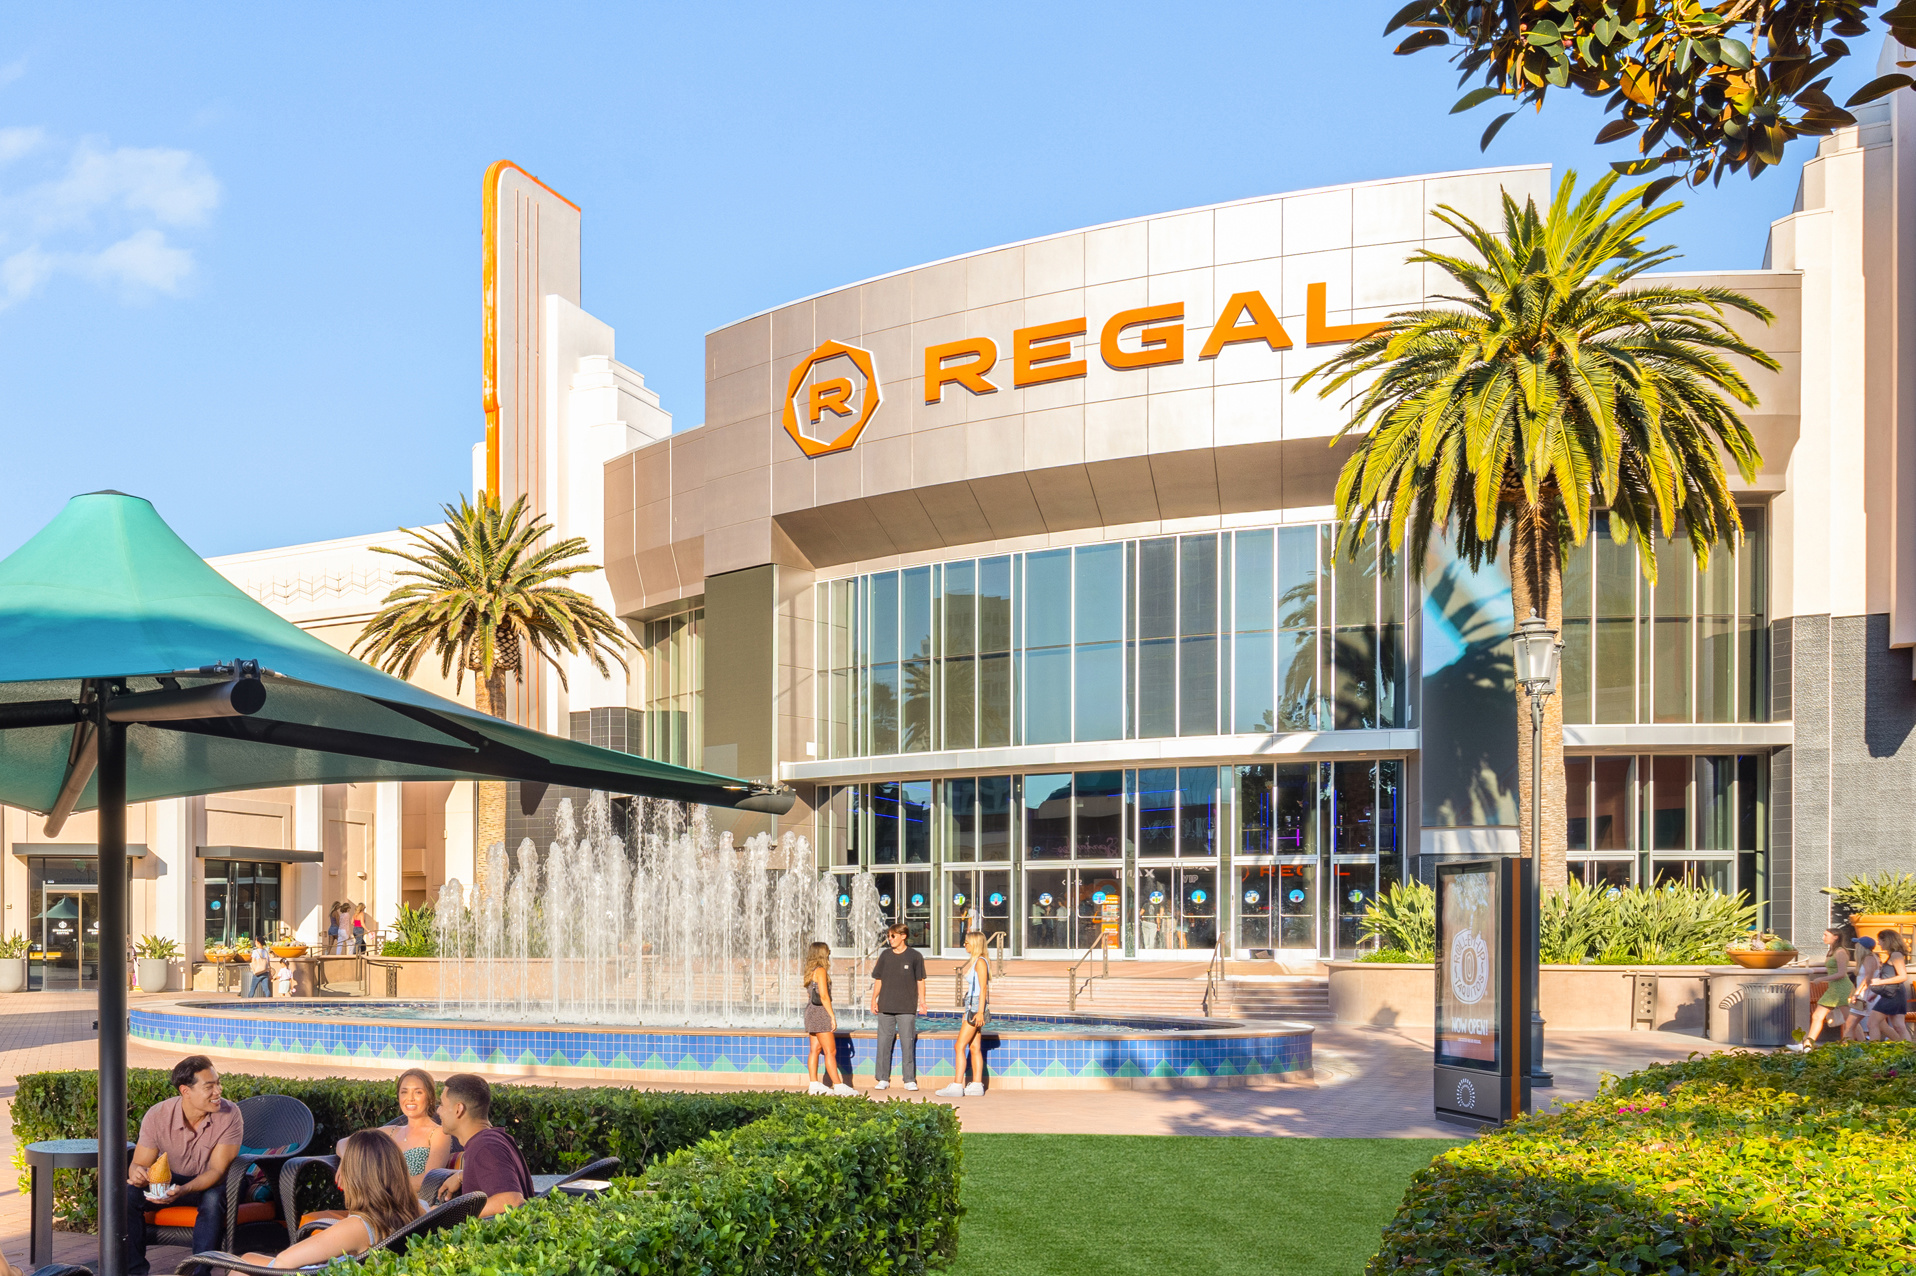 Regal Theaters at Irvine Spectrum Center